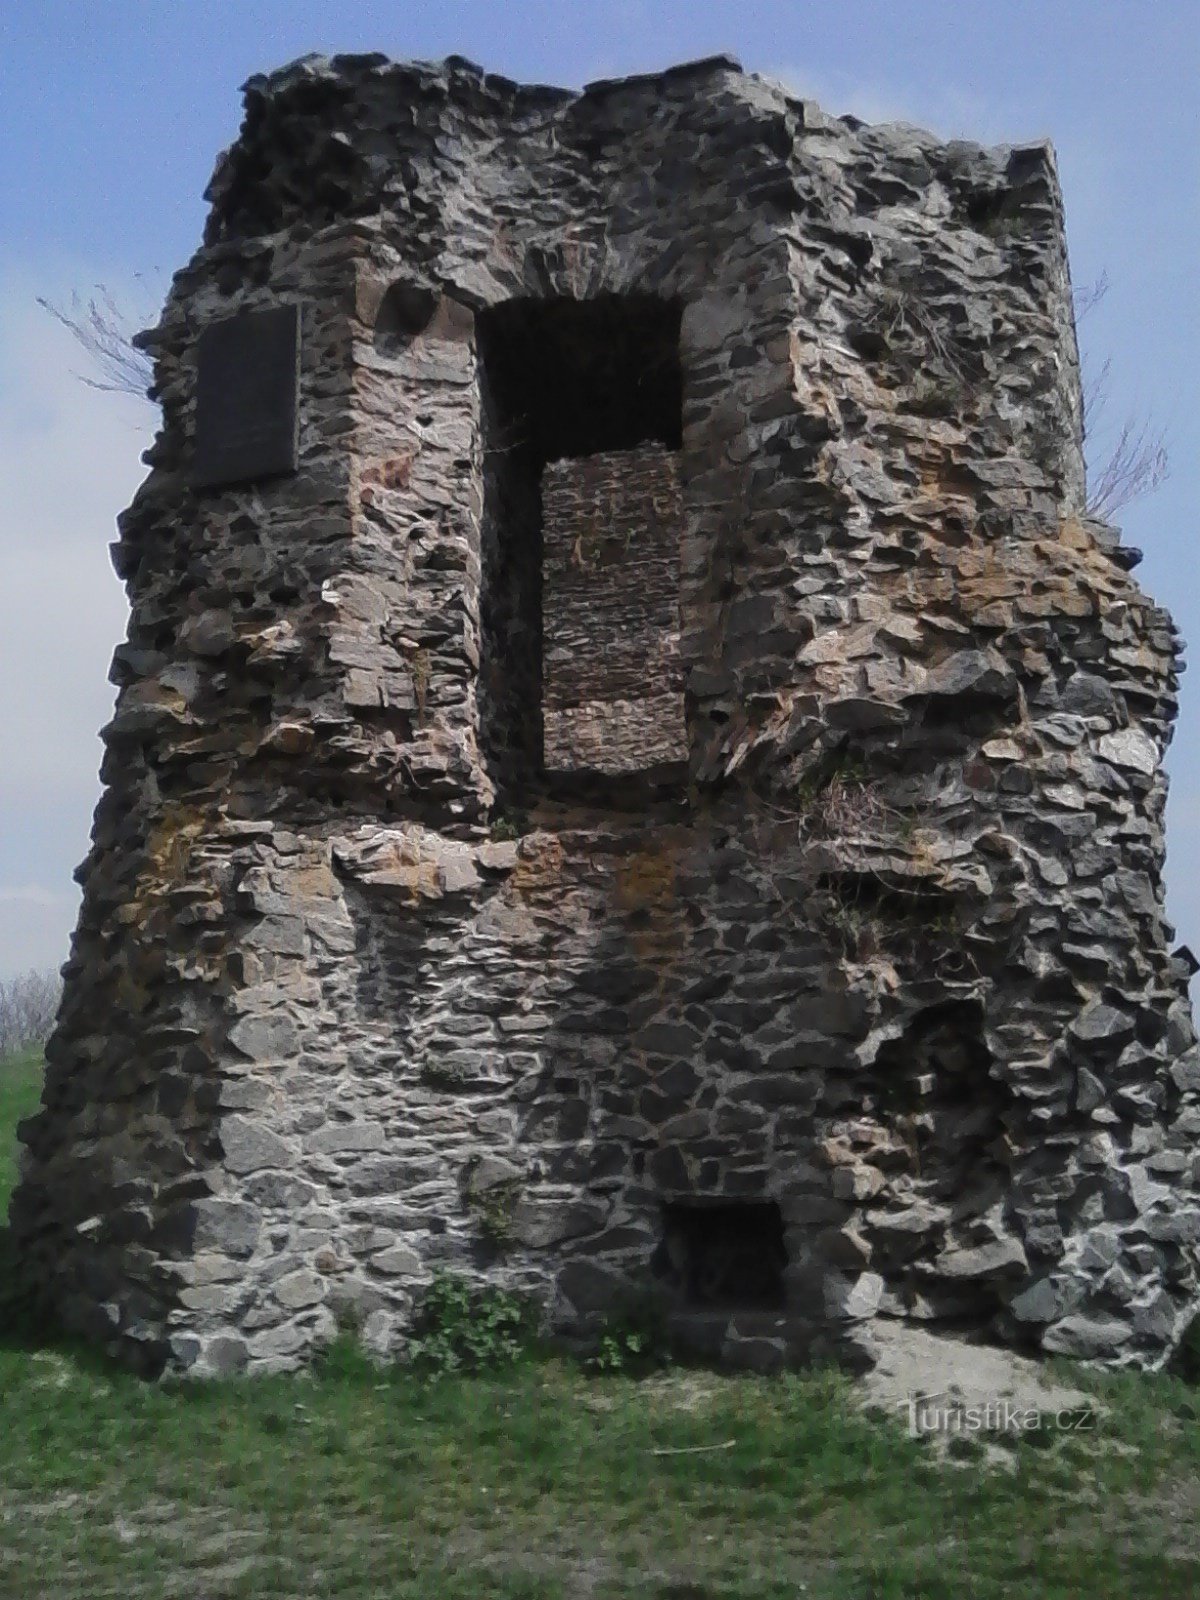 2. O parte din zidurile Castelului Borotina, deasupra se află o placă care comemorează vizita lui KH Mácha.